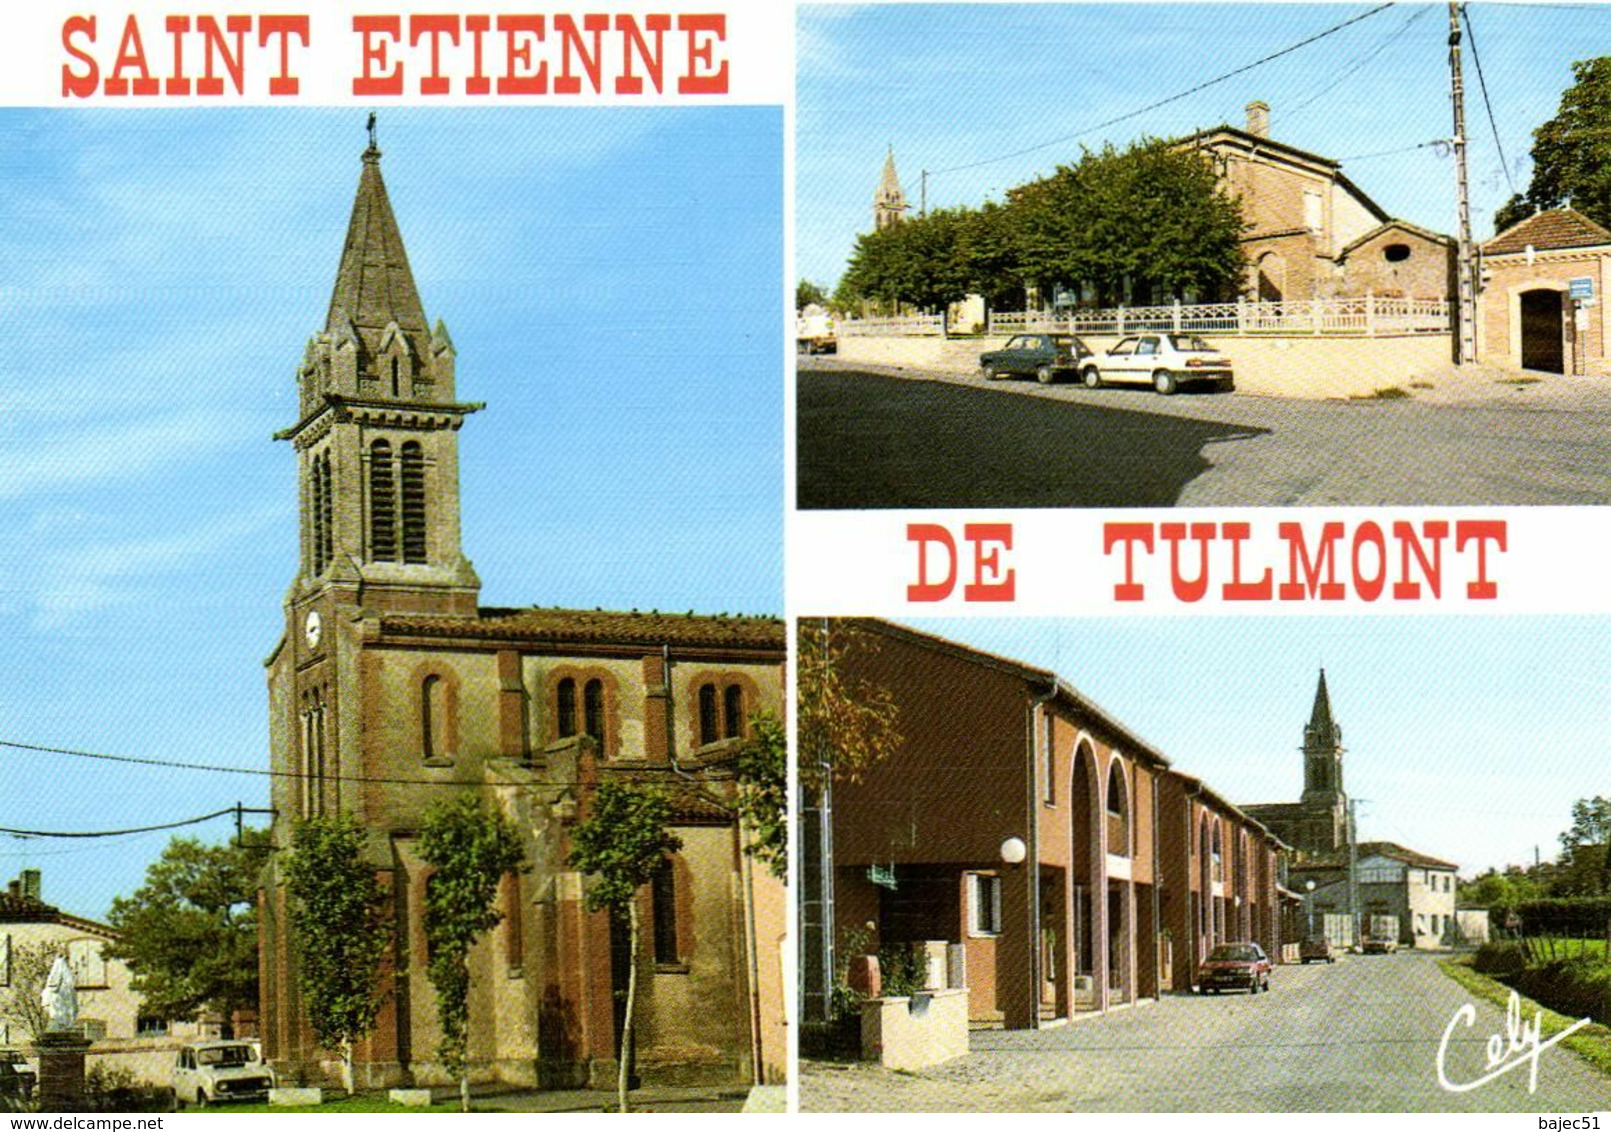 Saint Etienne De Tulmont - Saint Etienne De Tulmont